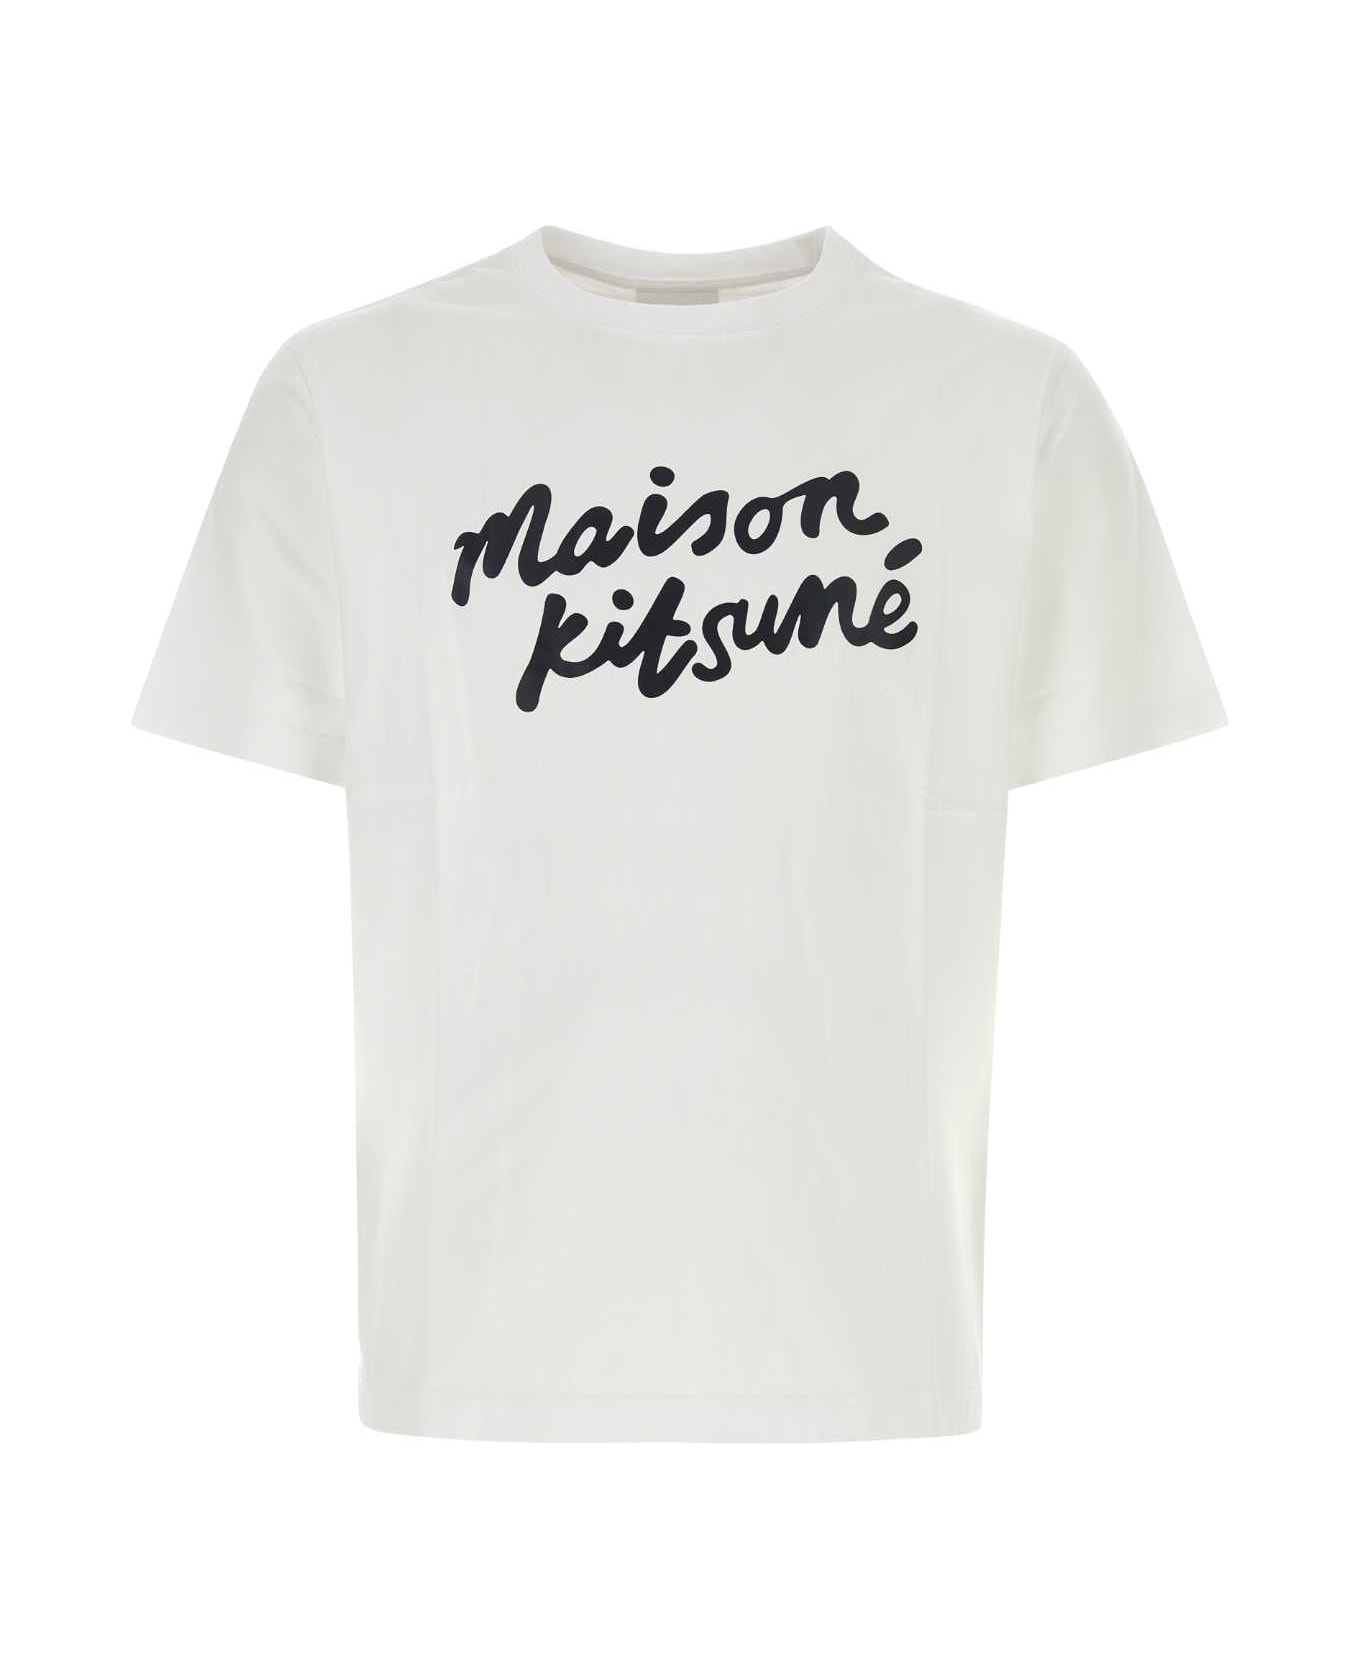 Maison Kitsuné White Cotton T-shirt - WHITEBLACK